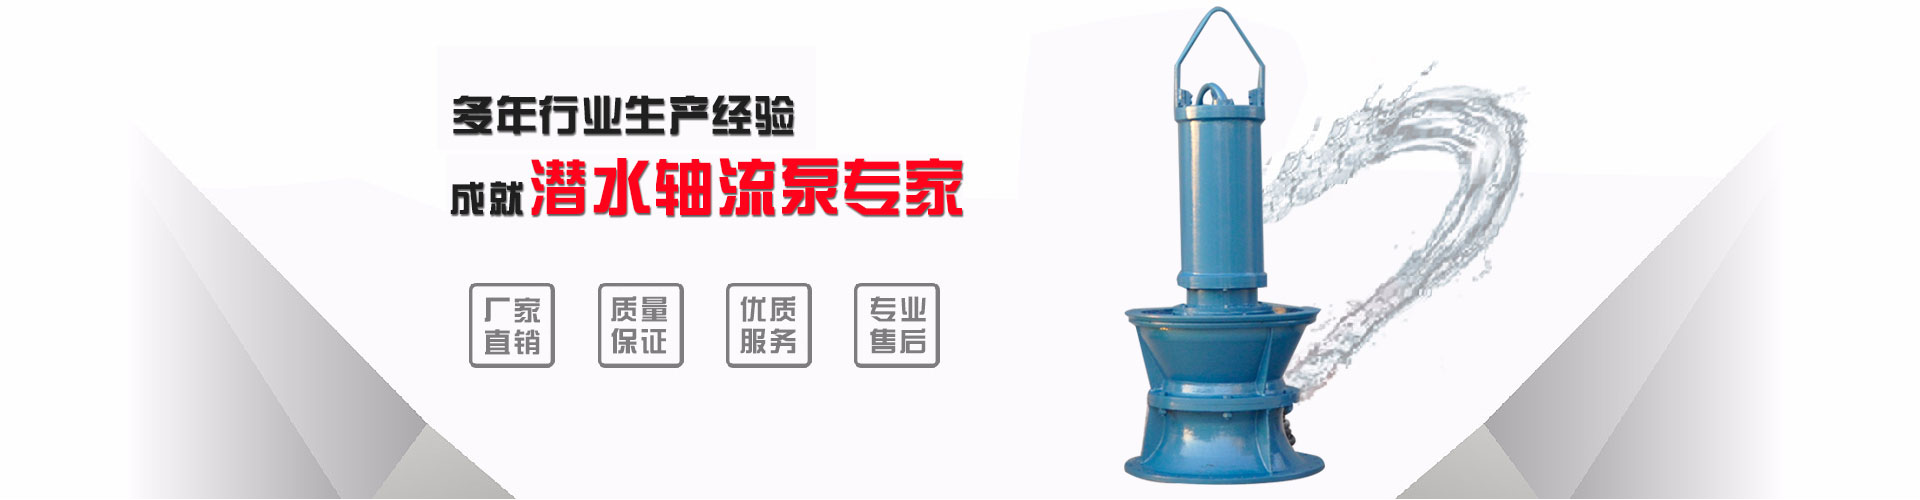 高压浮筒泵矿山排水_宜春浮筒泵